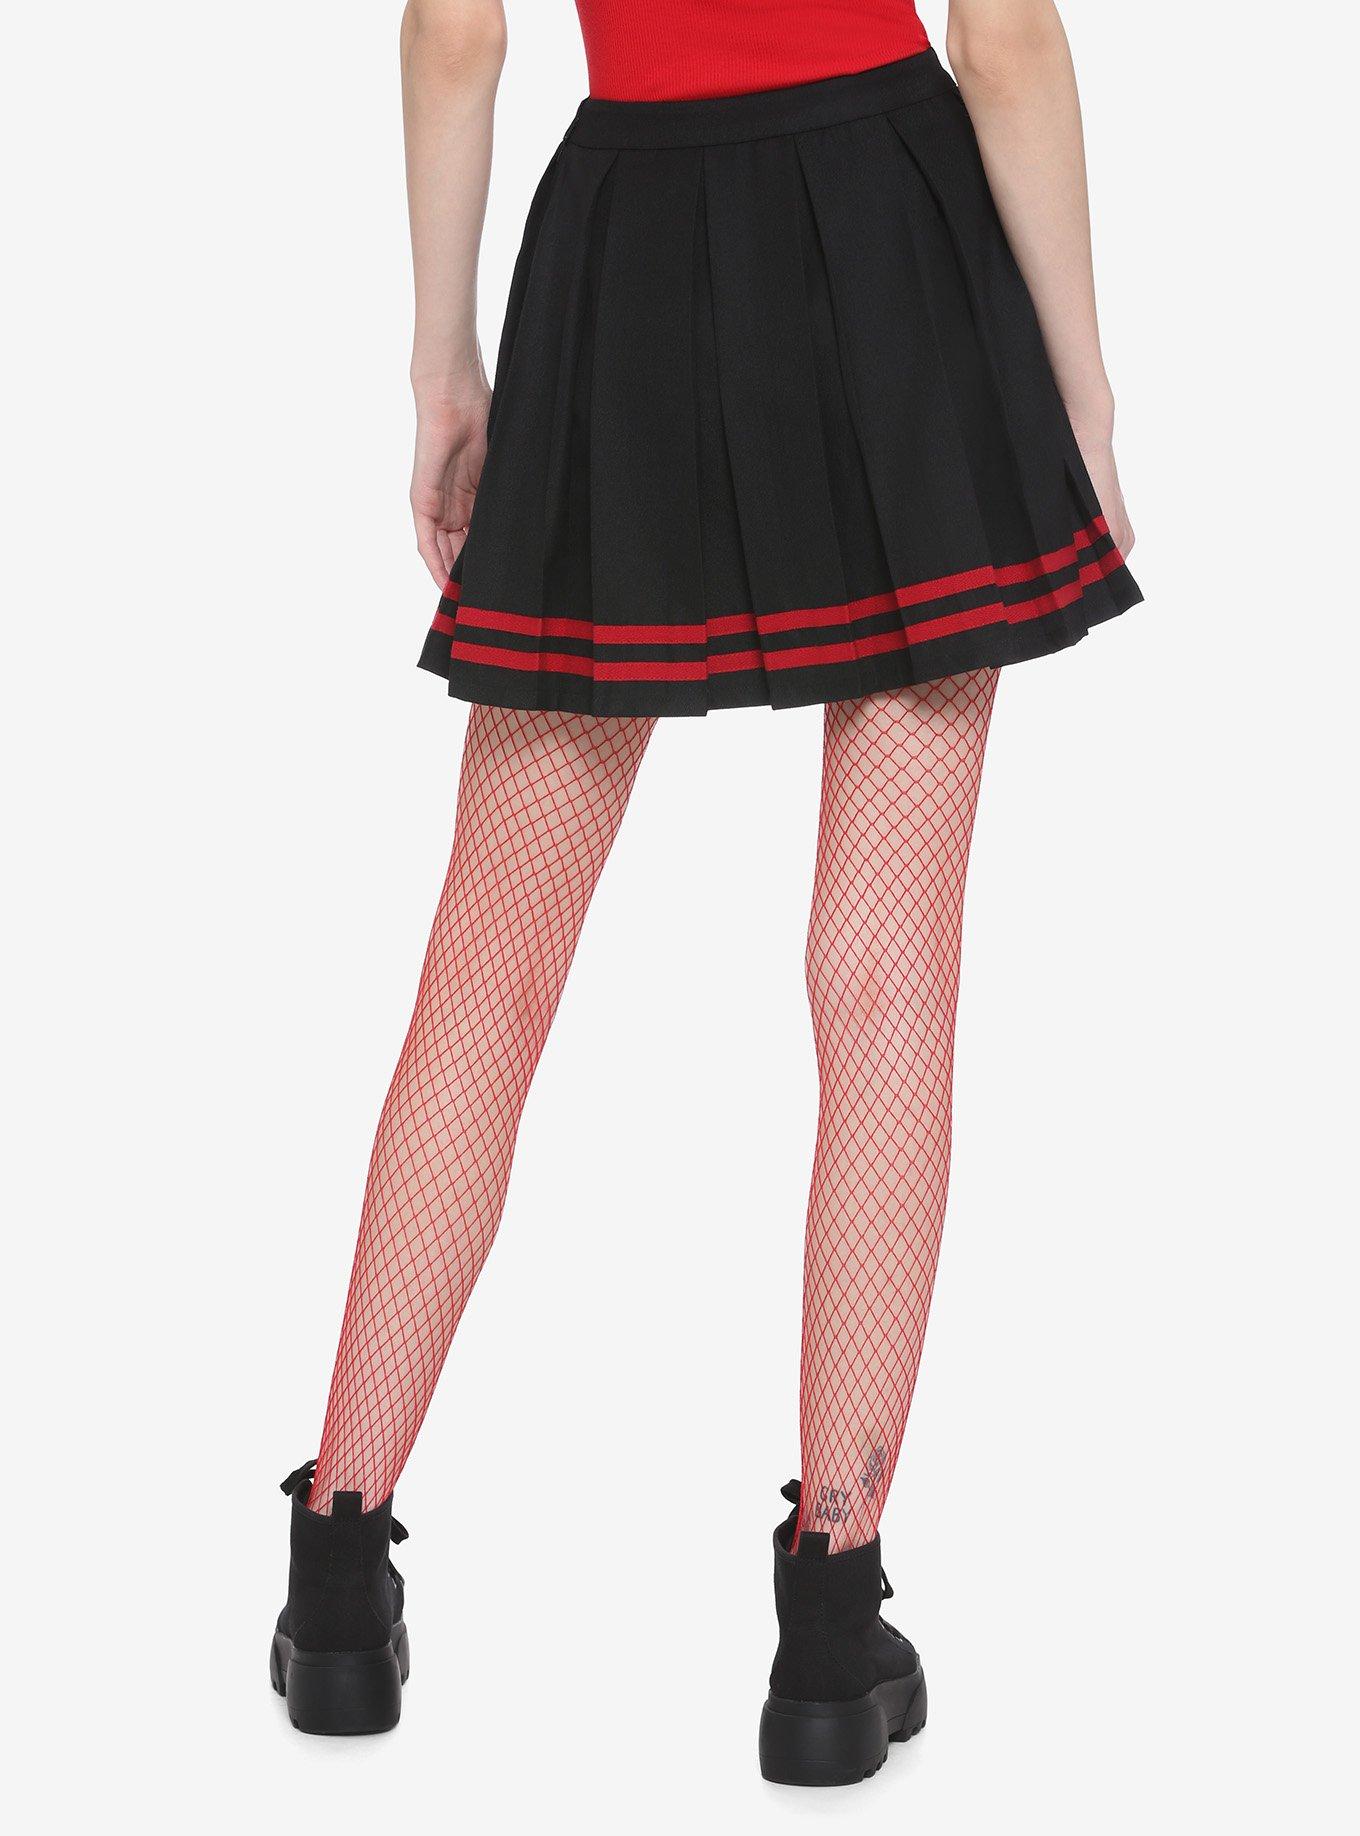 Black & Red Pleated Cheer Skirt, BLACK, alternate